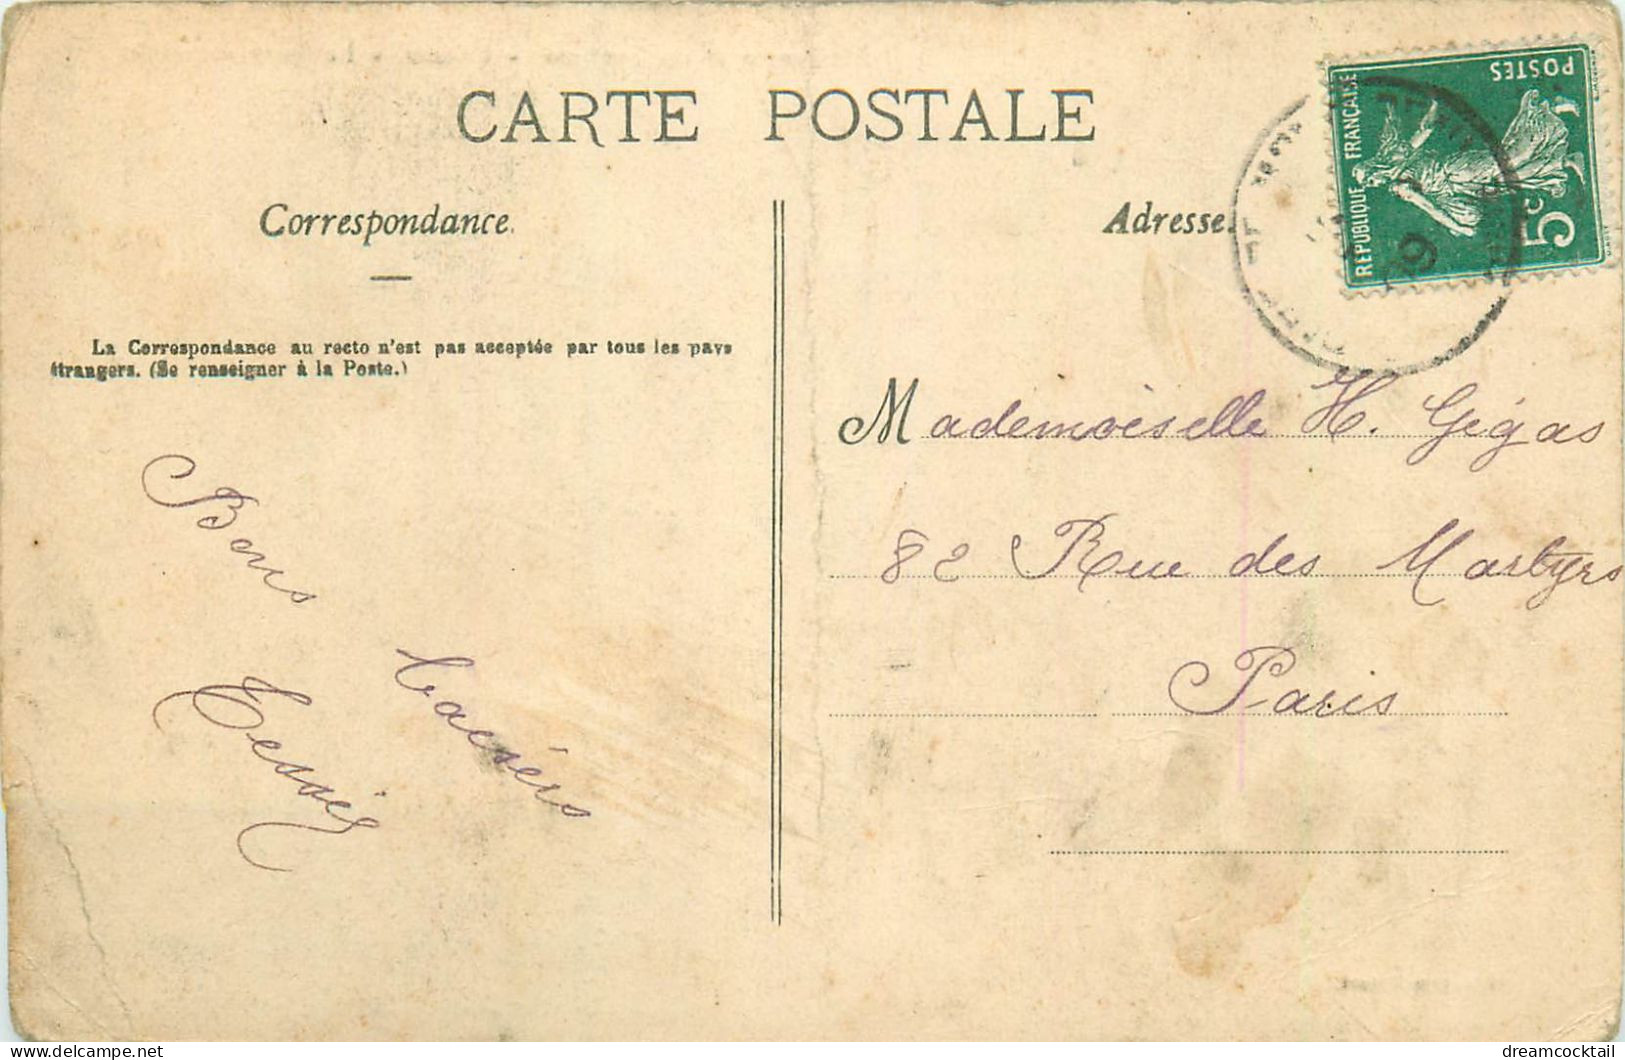 (S) Superbe LOT n°8 de 50 cartes postales anciennes France régionalisme